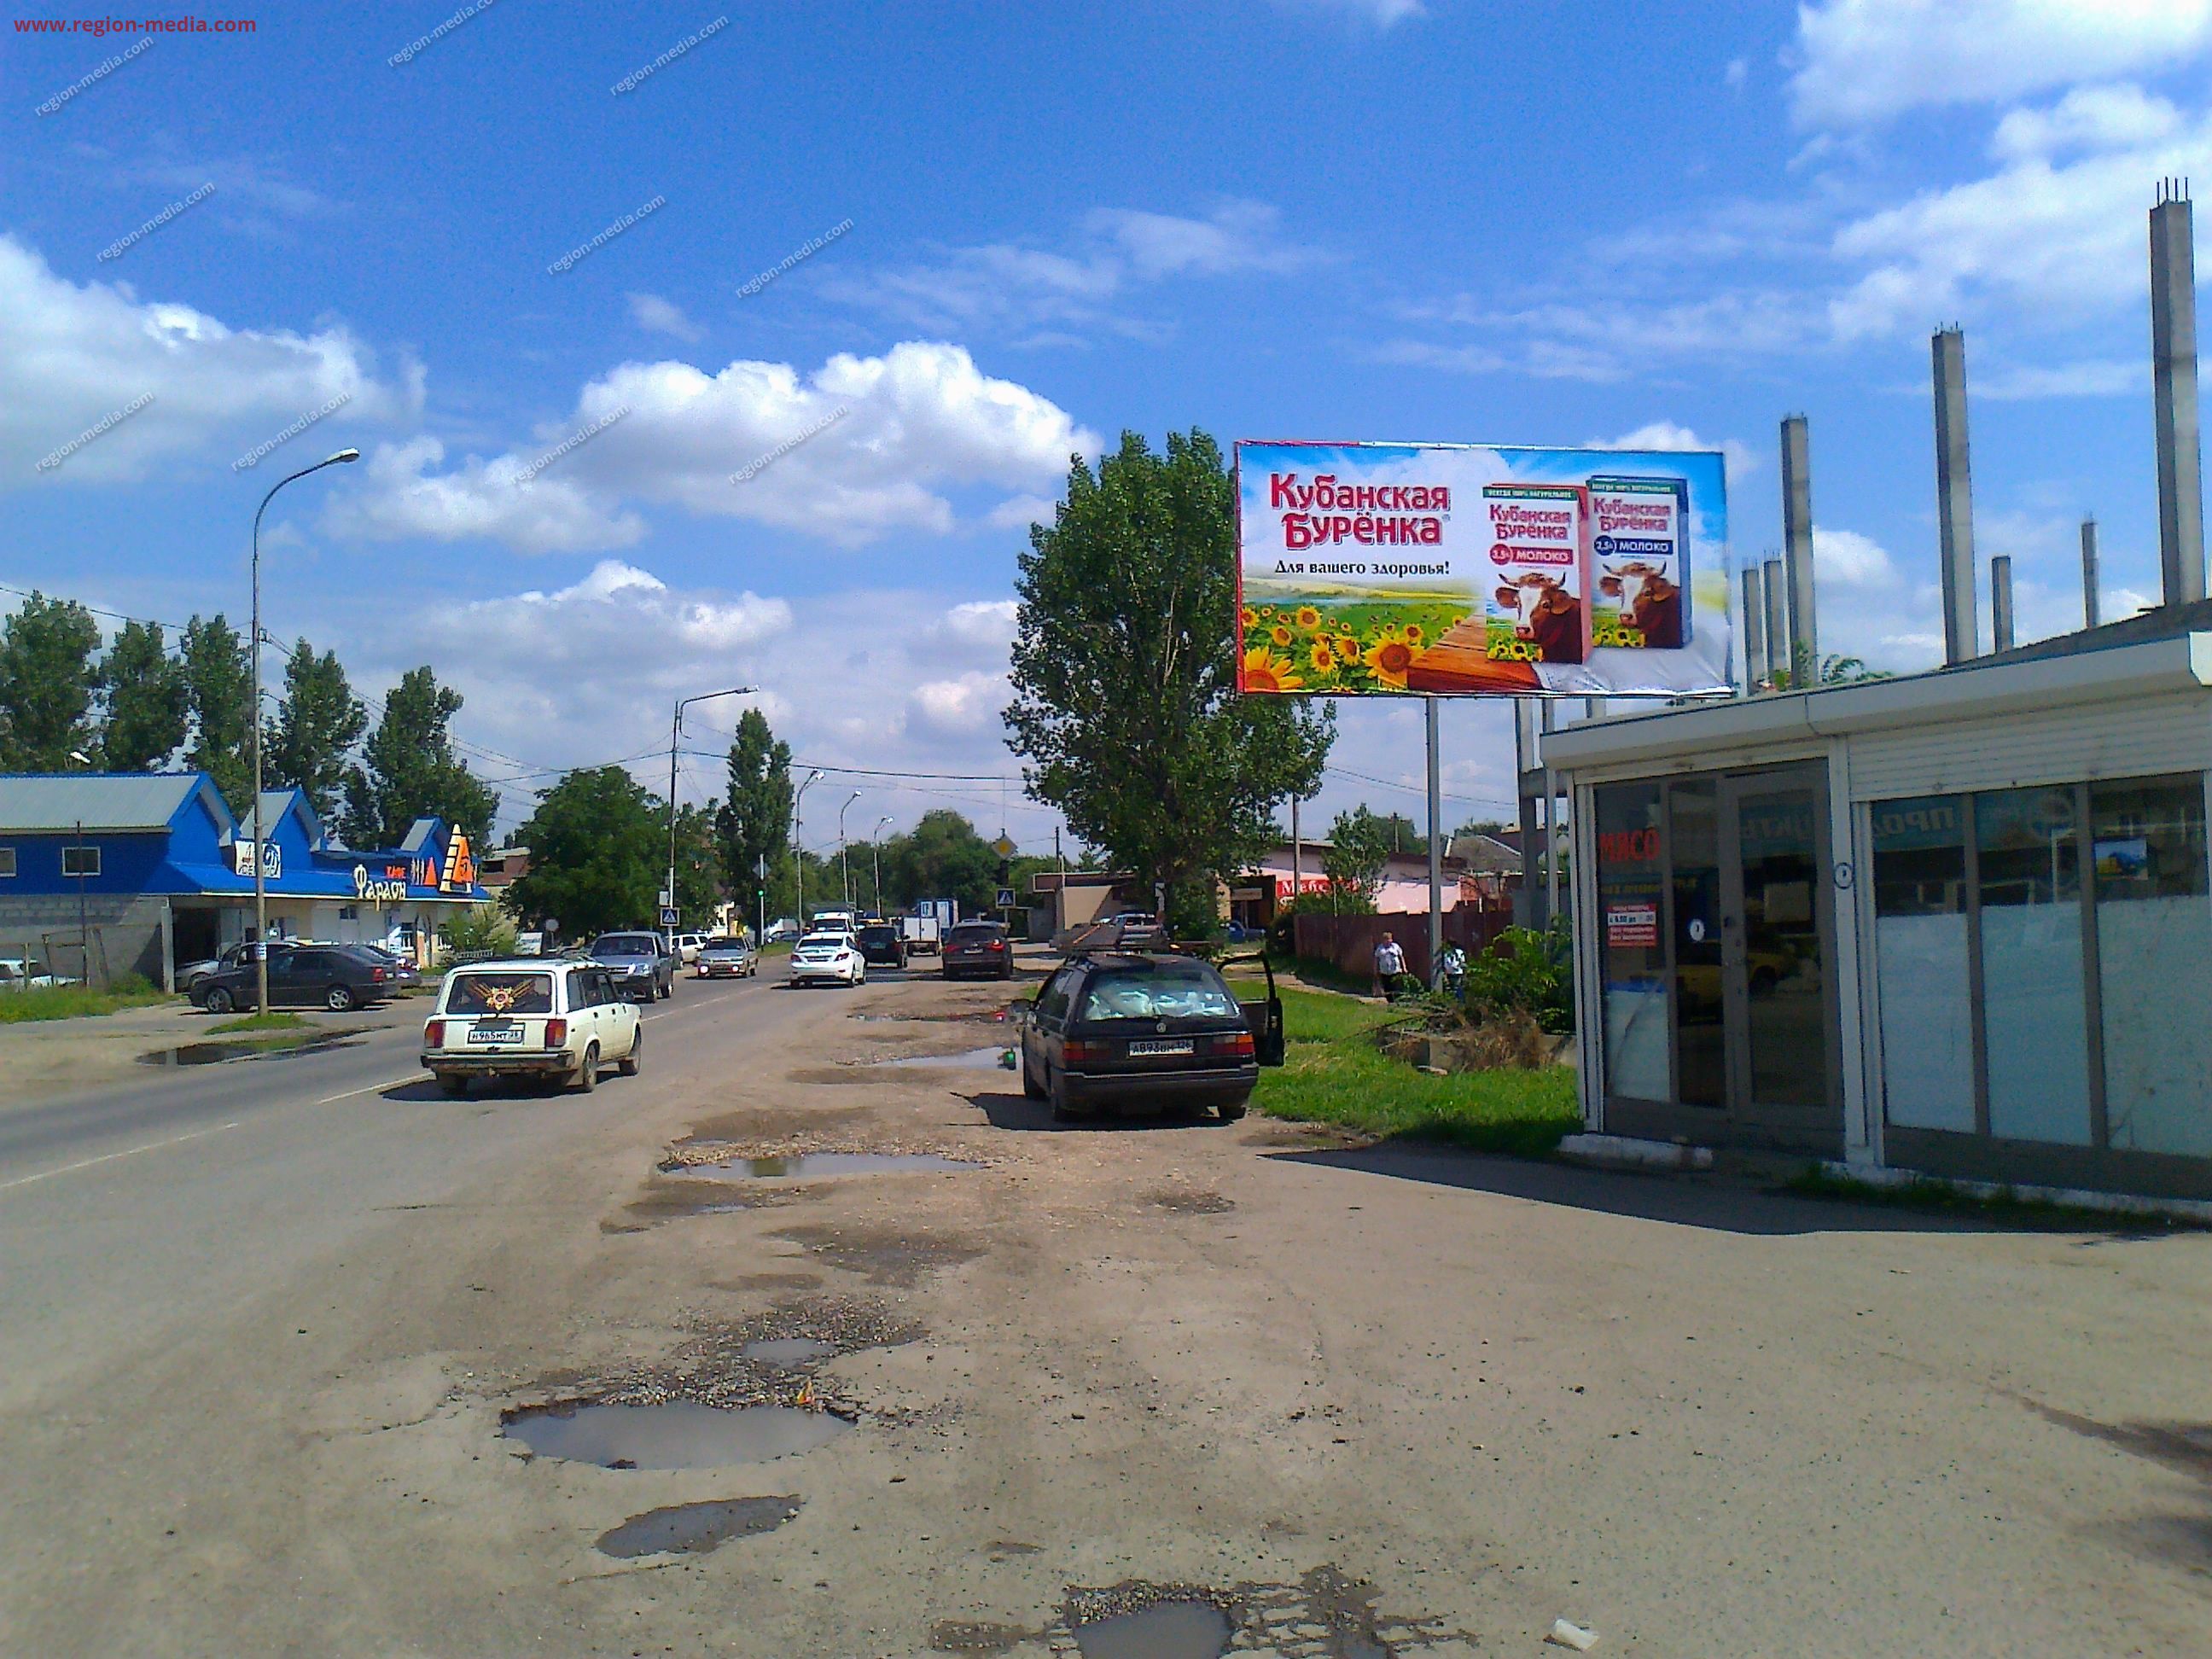 Размещение рекламы компании "Кубанская бурёнка" на щитах 3х6 в городе Минеральные Воды 